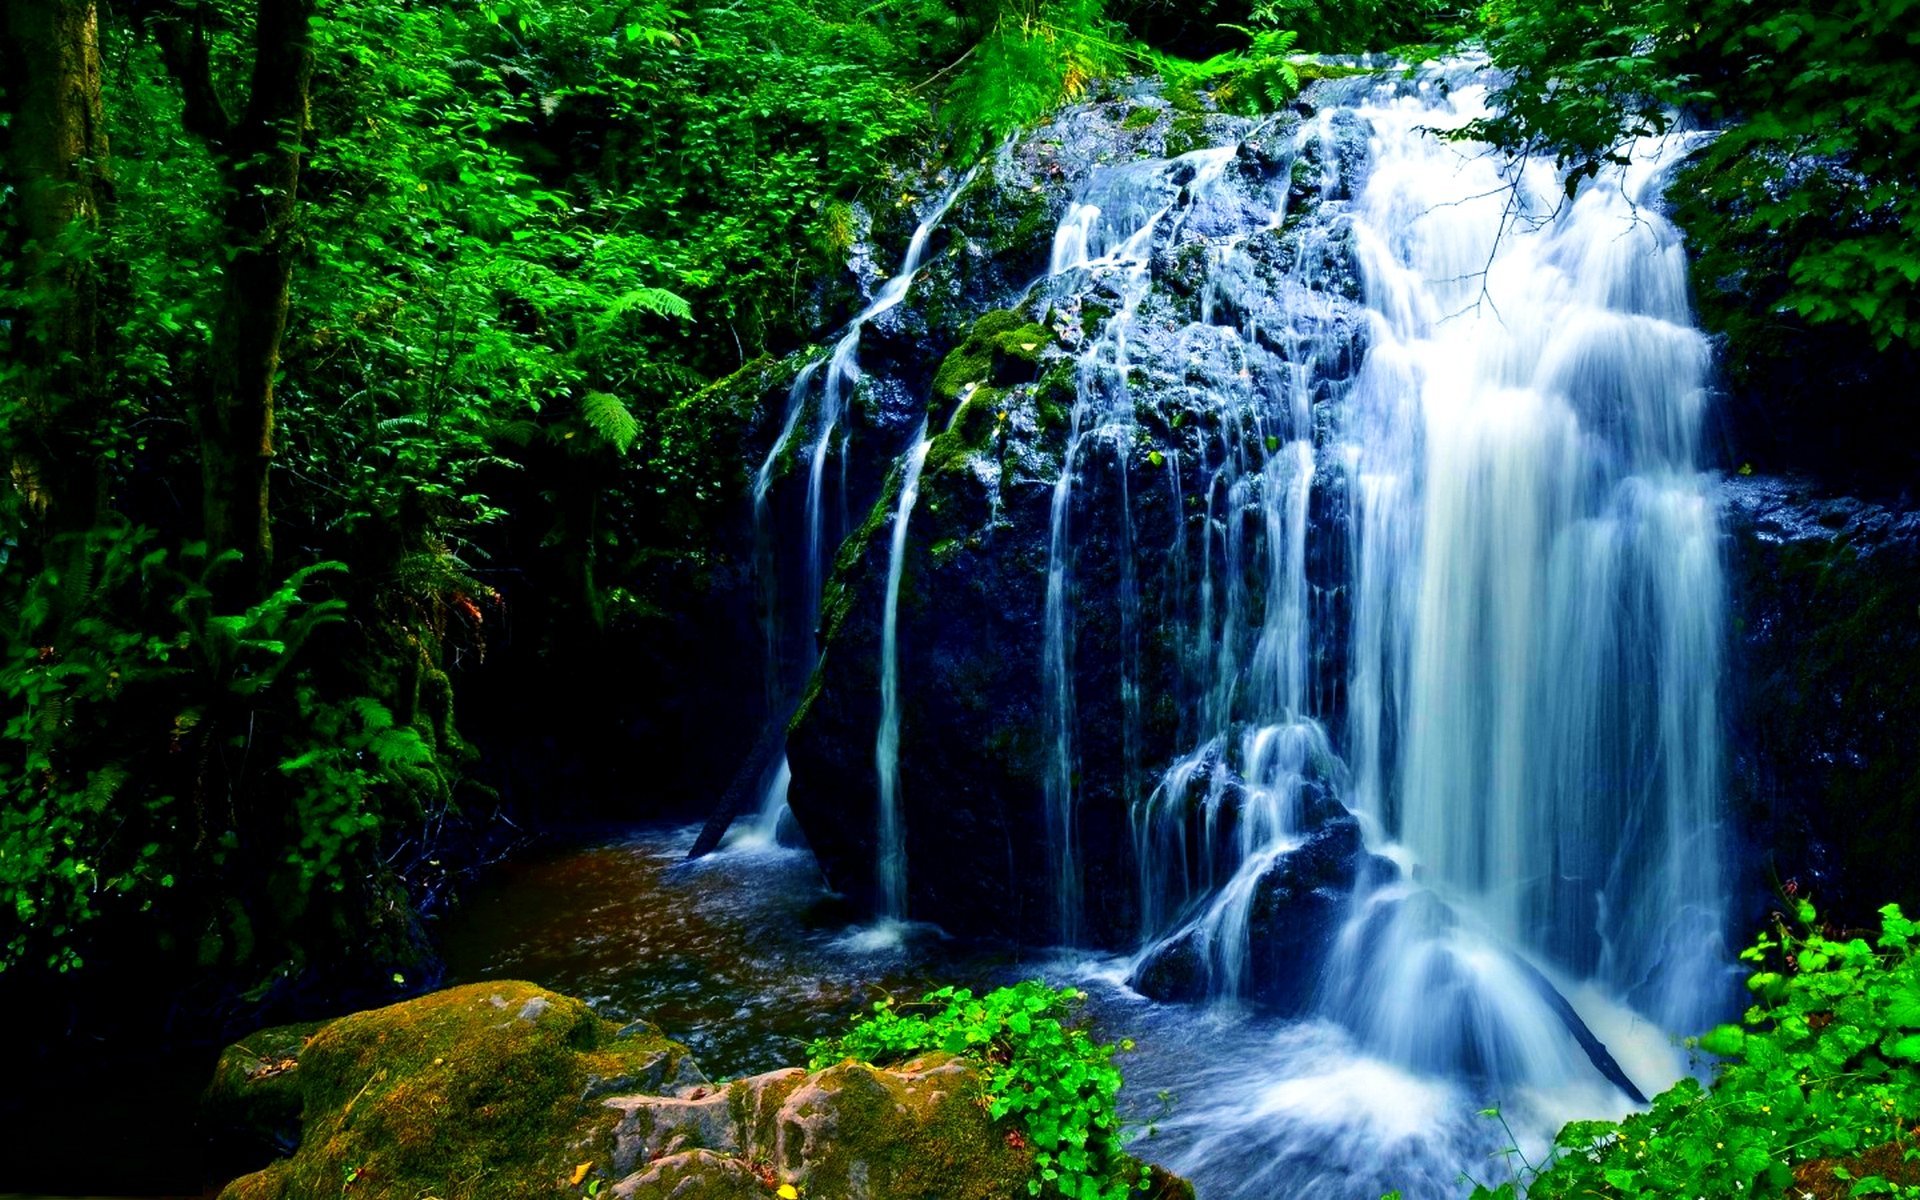 Обои на телефон живой водопад. Природа водопад. Живая природа водопады. Красивые водопады. Обои на рабочий стол водопад.